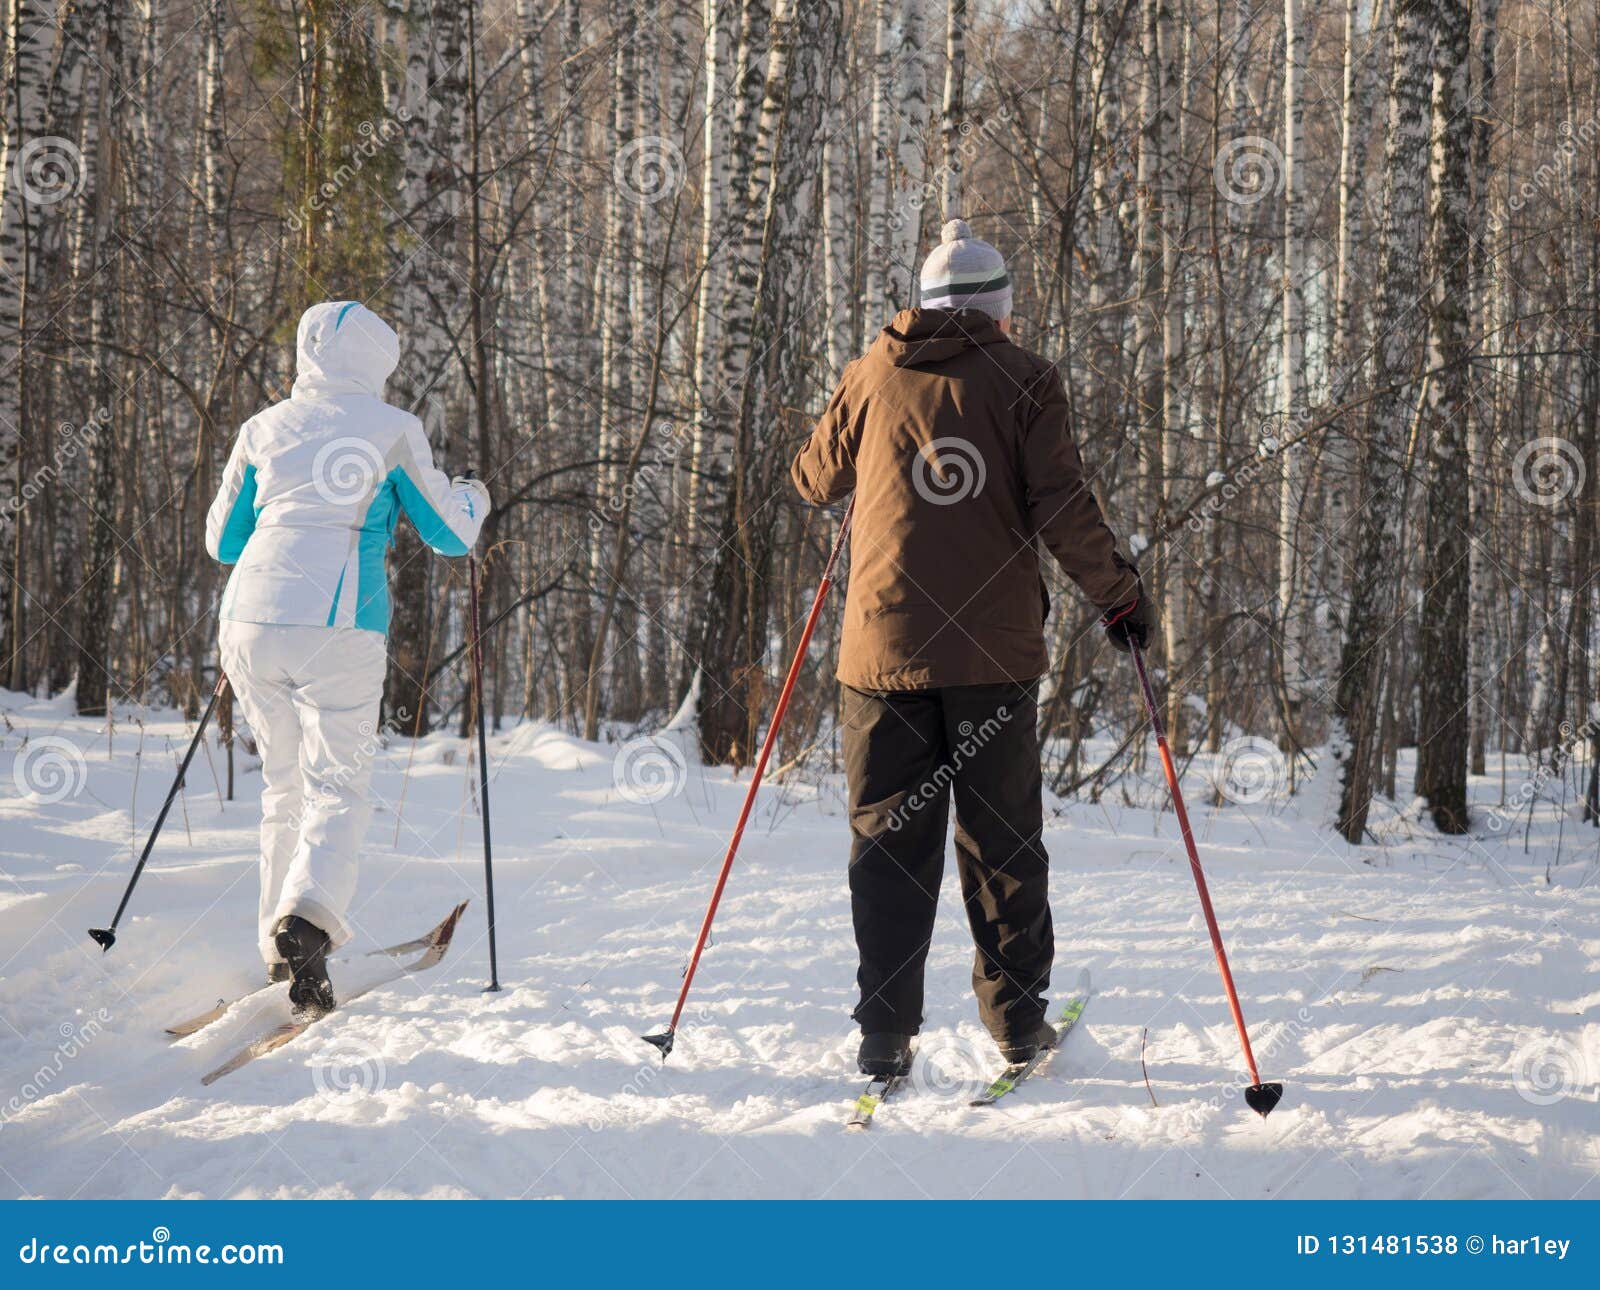 快乐的老年夫妻乘雪橇滑雪-蓝牛仔影像-中国原创广告影像素材